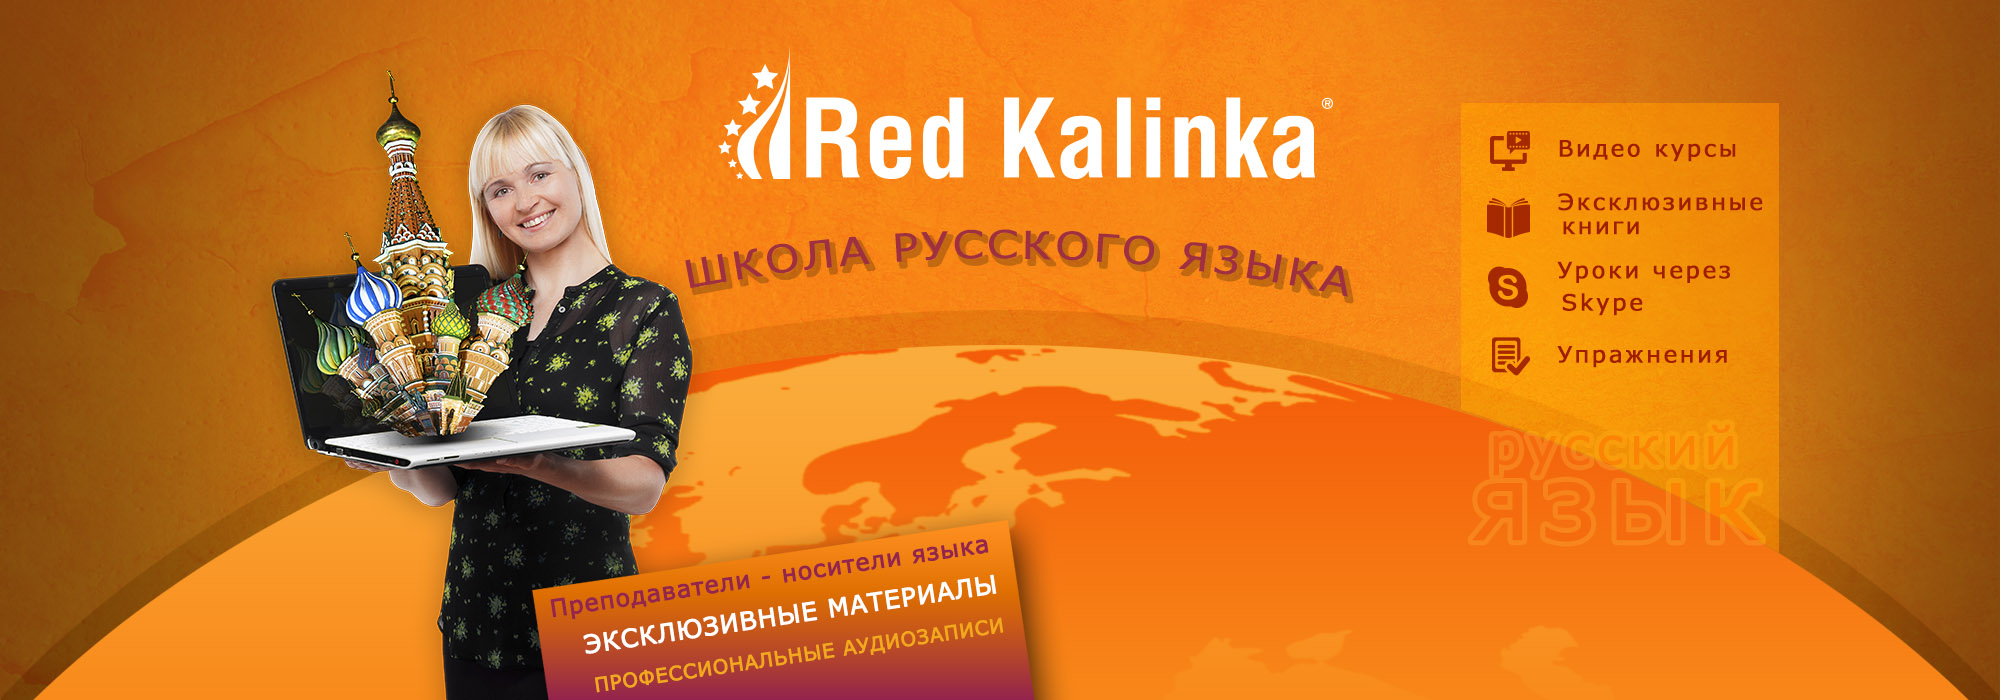 Red Kalinka: школа русского языка